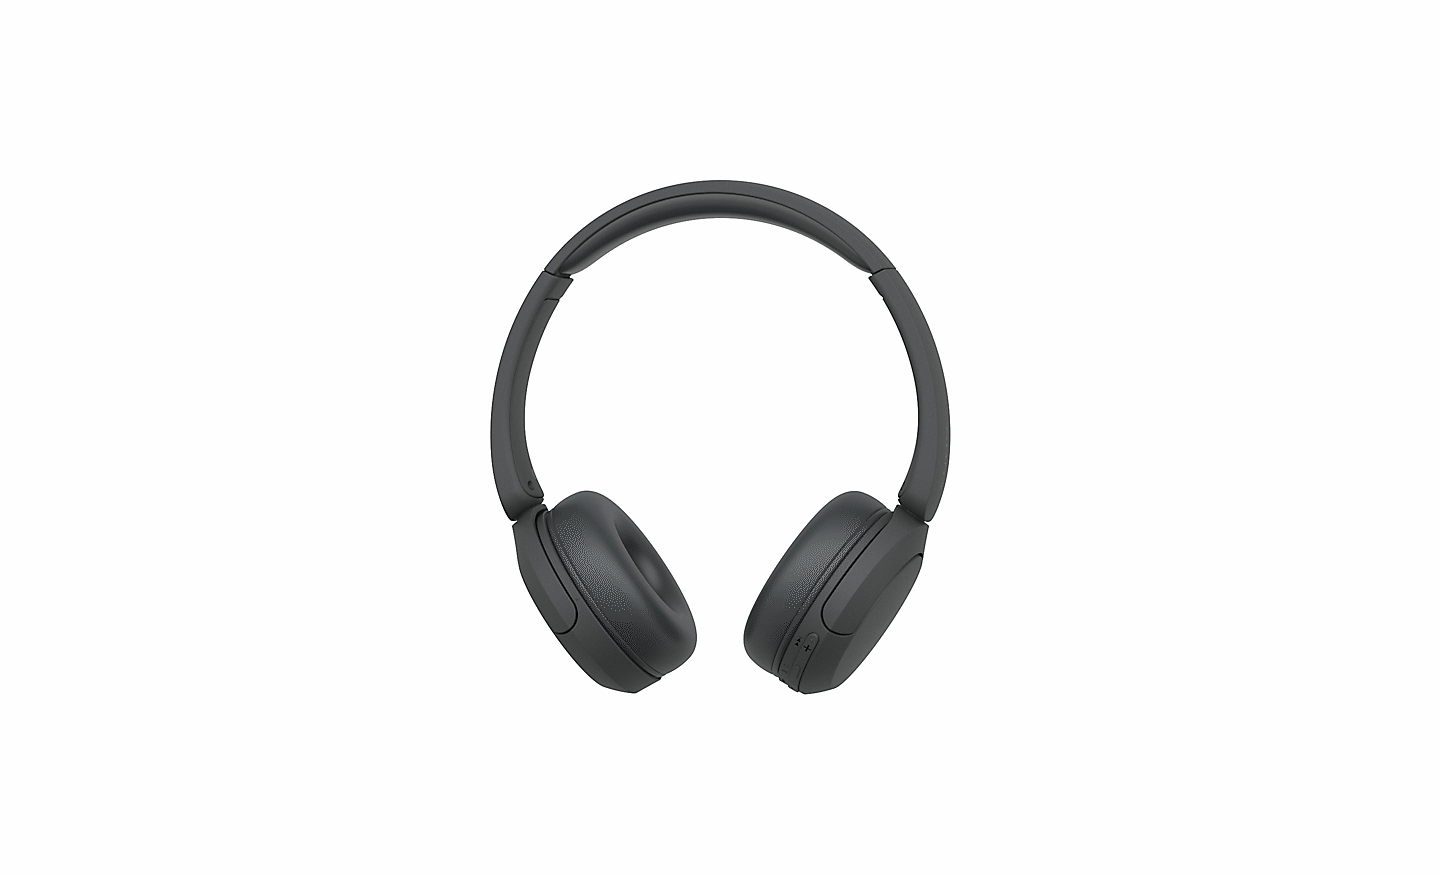 תמונה של זוג שחור של אוזניות Sony WH-CH520 על רקע לבן